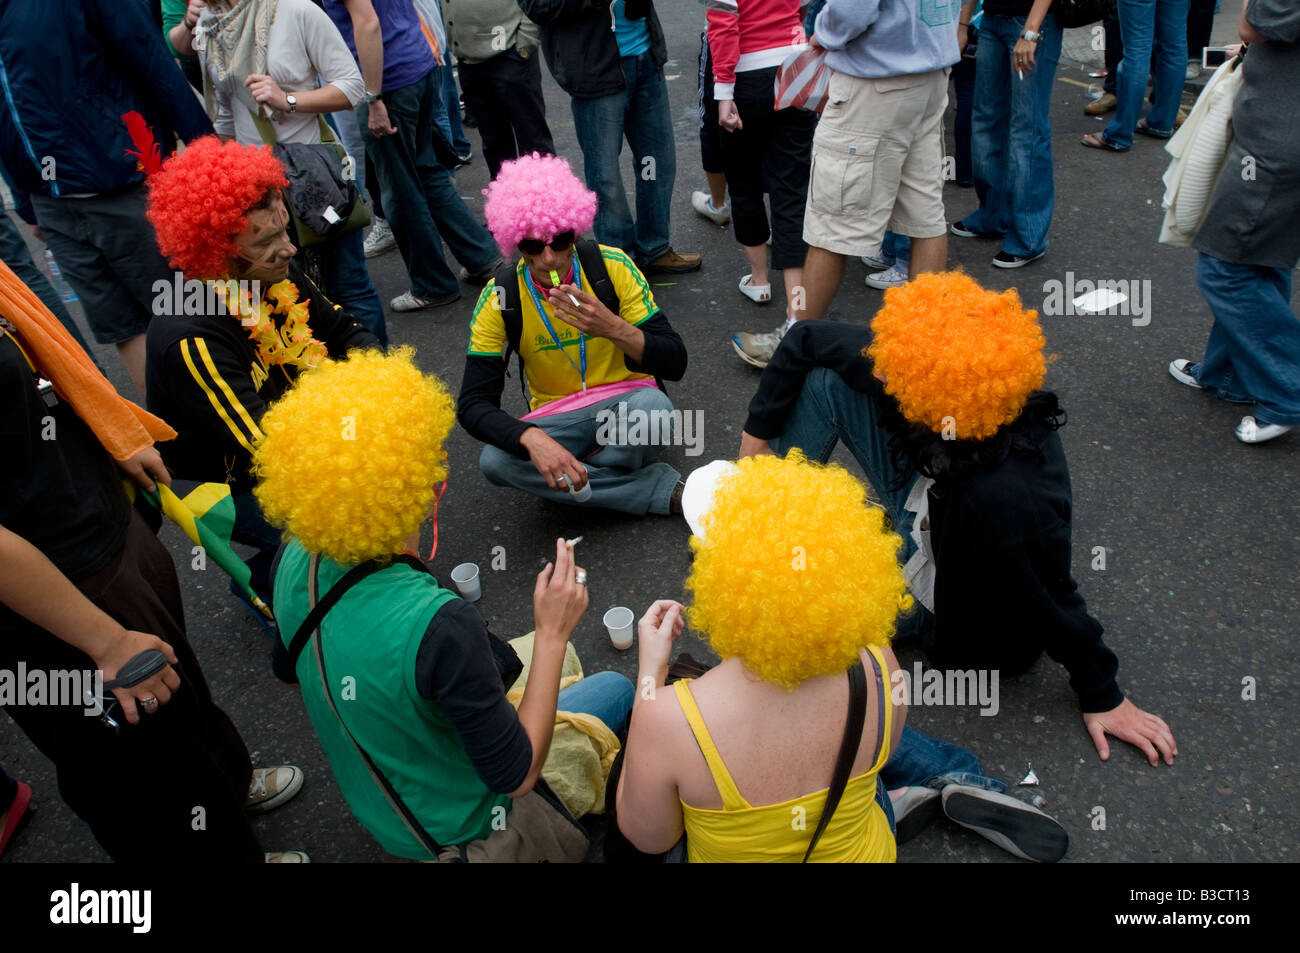 Royaume-uni, Angleterre, 25 août 2008. Fêtards s'asseoir dans la rue pendant la carnaval de Notting Hill dans l'ouest de Londres. Banque D'Images